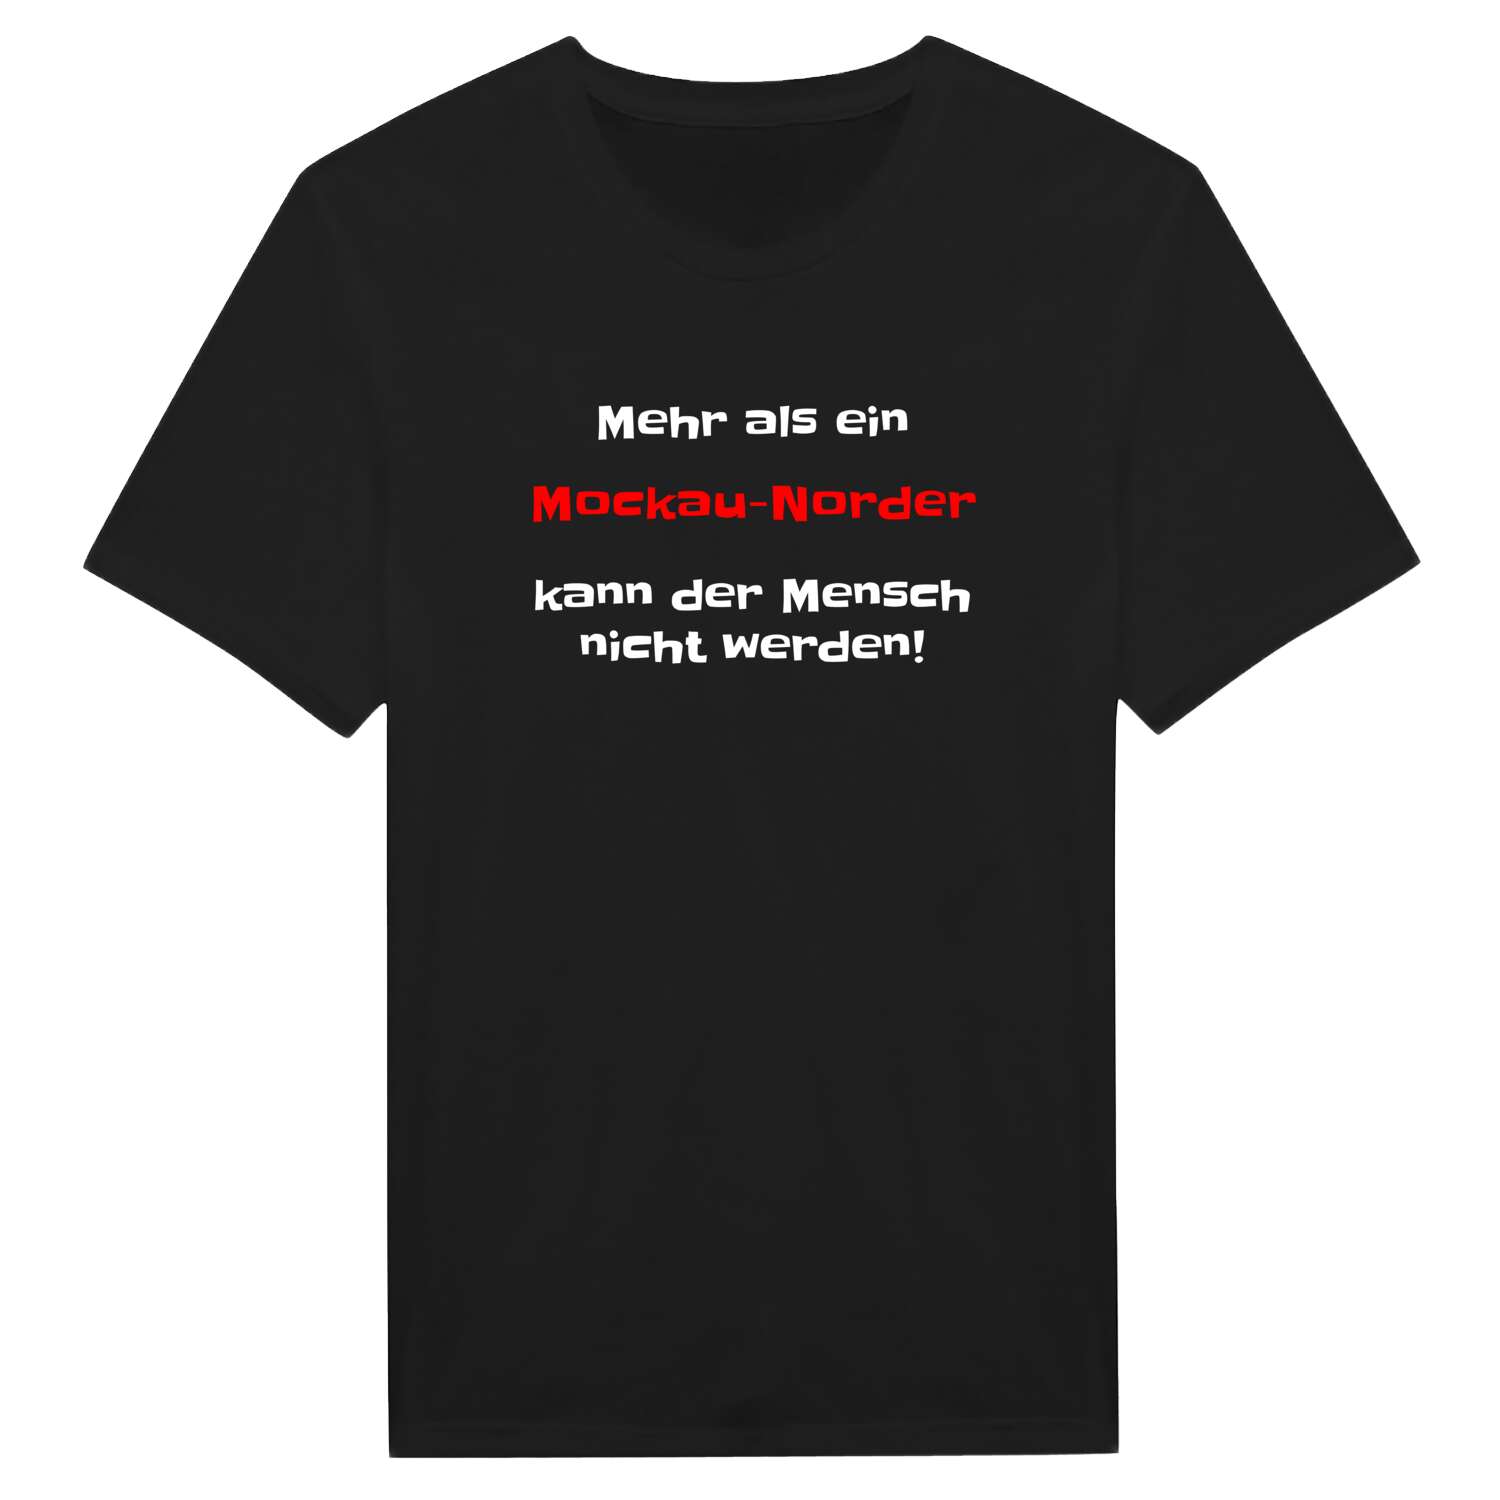 Mockau-Nord T-Shirt »Mehr als ein«